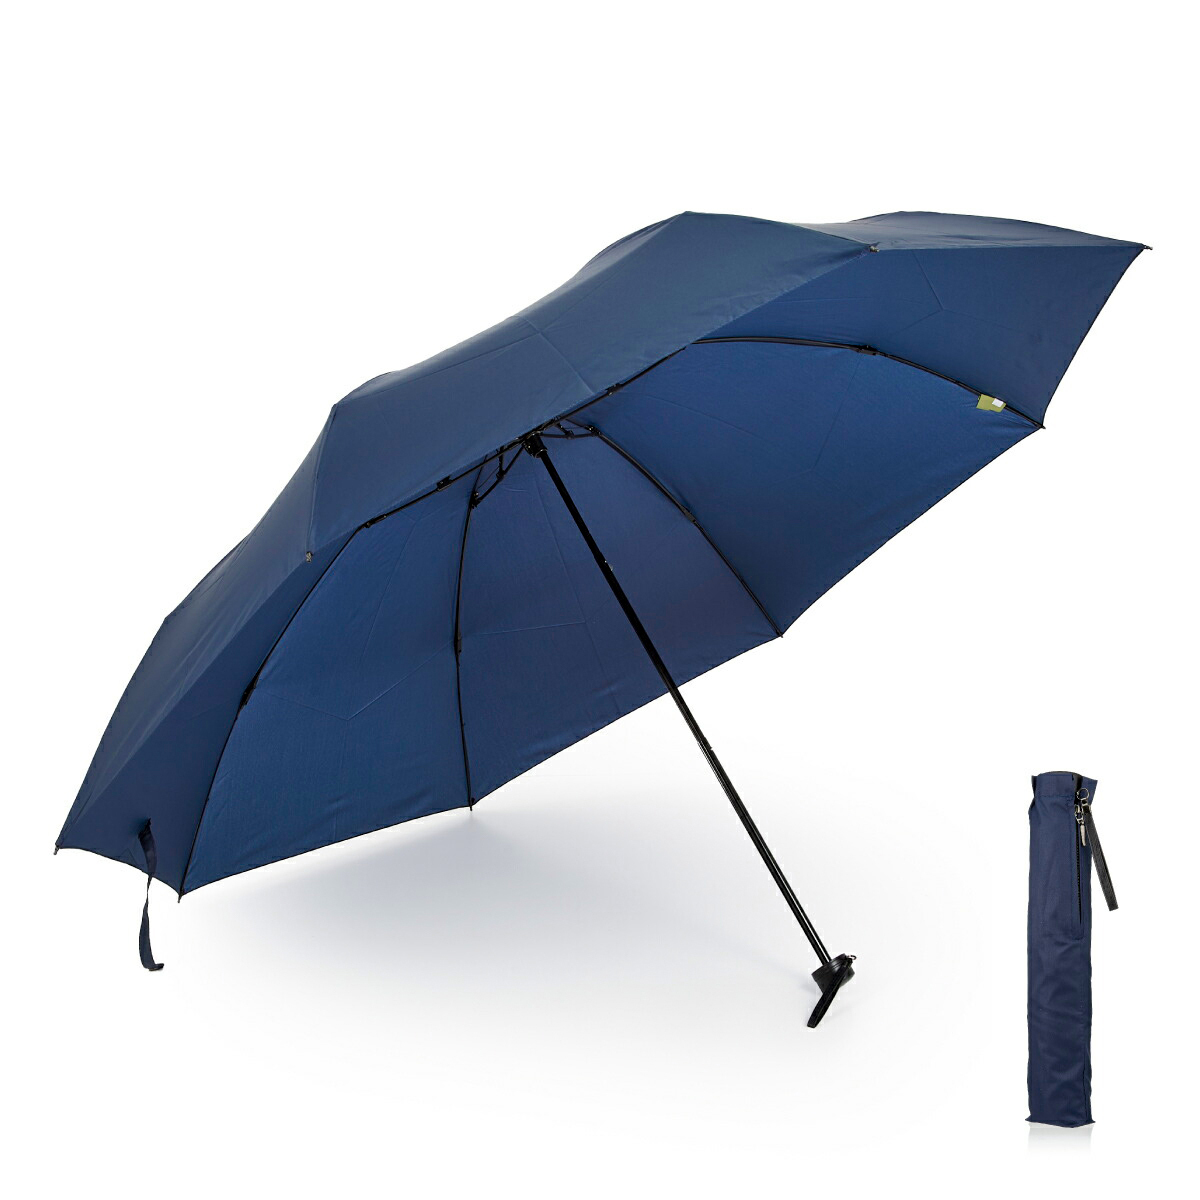 折りたたみ傘 軽量 メンズ 大きい 超軽量 大きいサイズ コンパクト 丈夫 カーボン 折り畳み傘 65cm 超撥水 :818127-52:傘